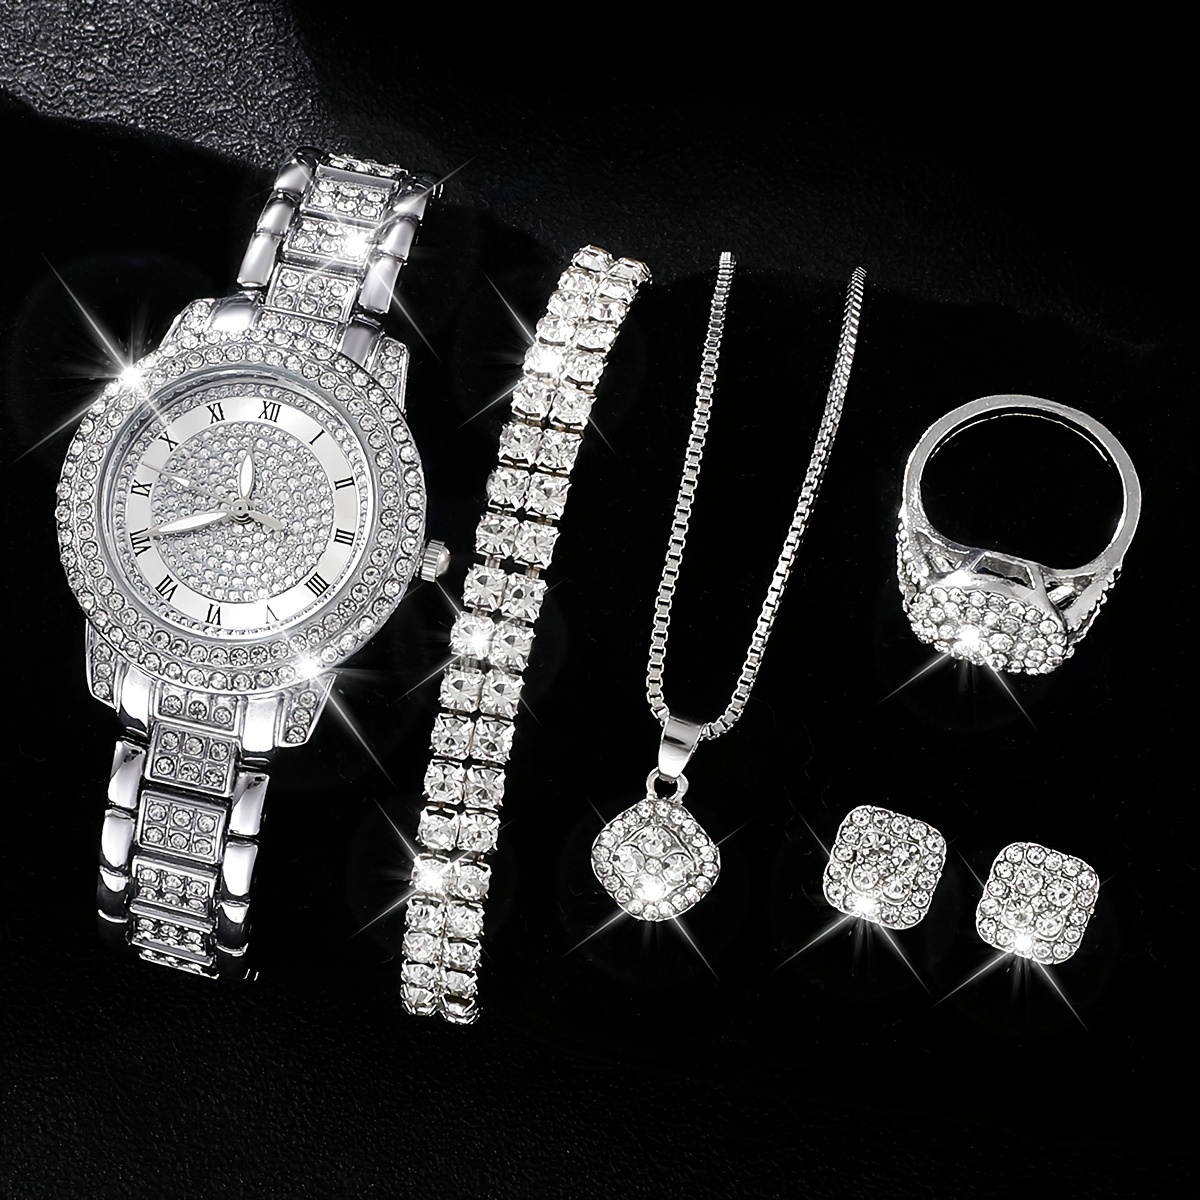 

6pcs/set Women's Watch Elegant Butterfly Quartz Watch Sparkling Rhinestone Analog Wrist Watch & Jewelry Set, Gift For Mom Her